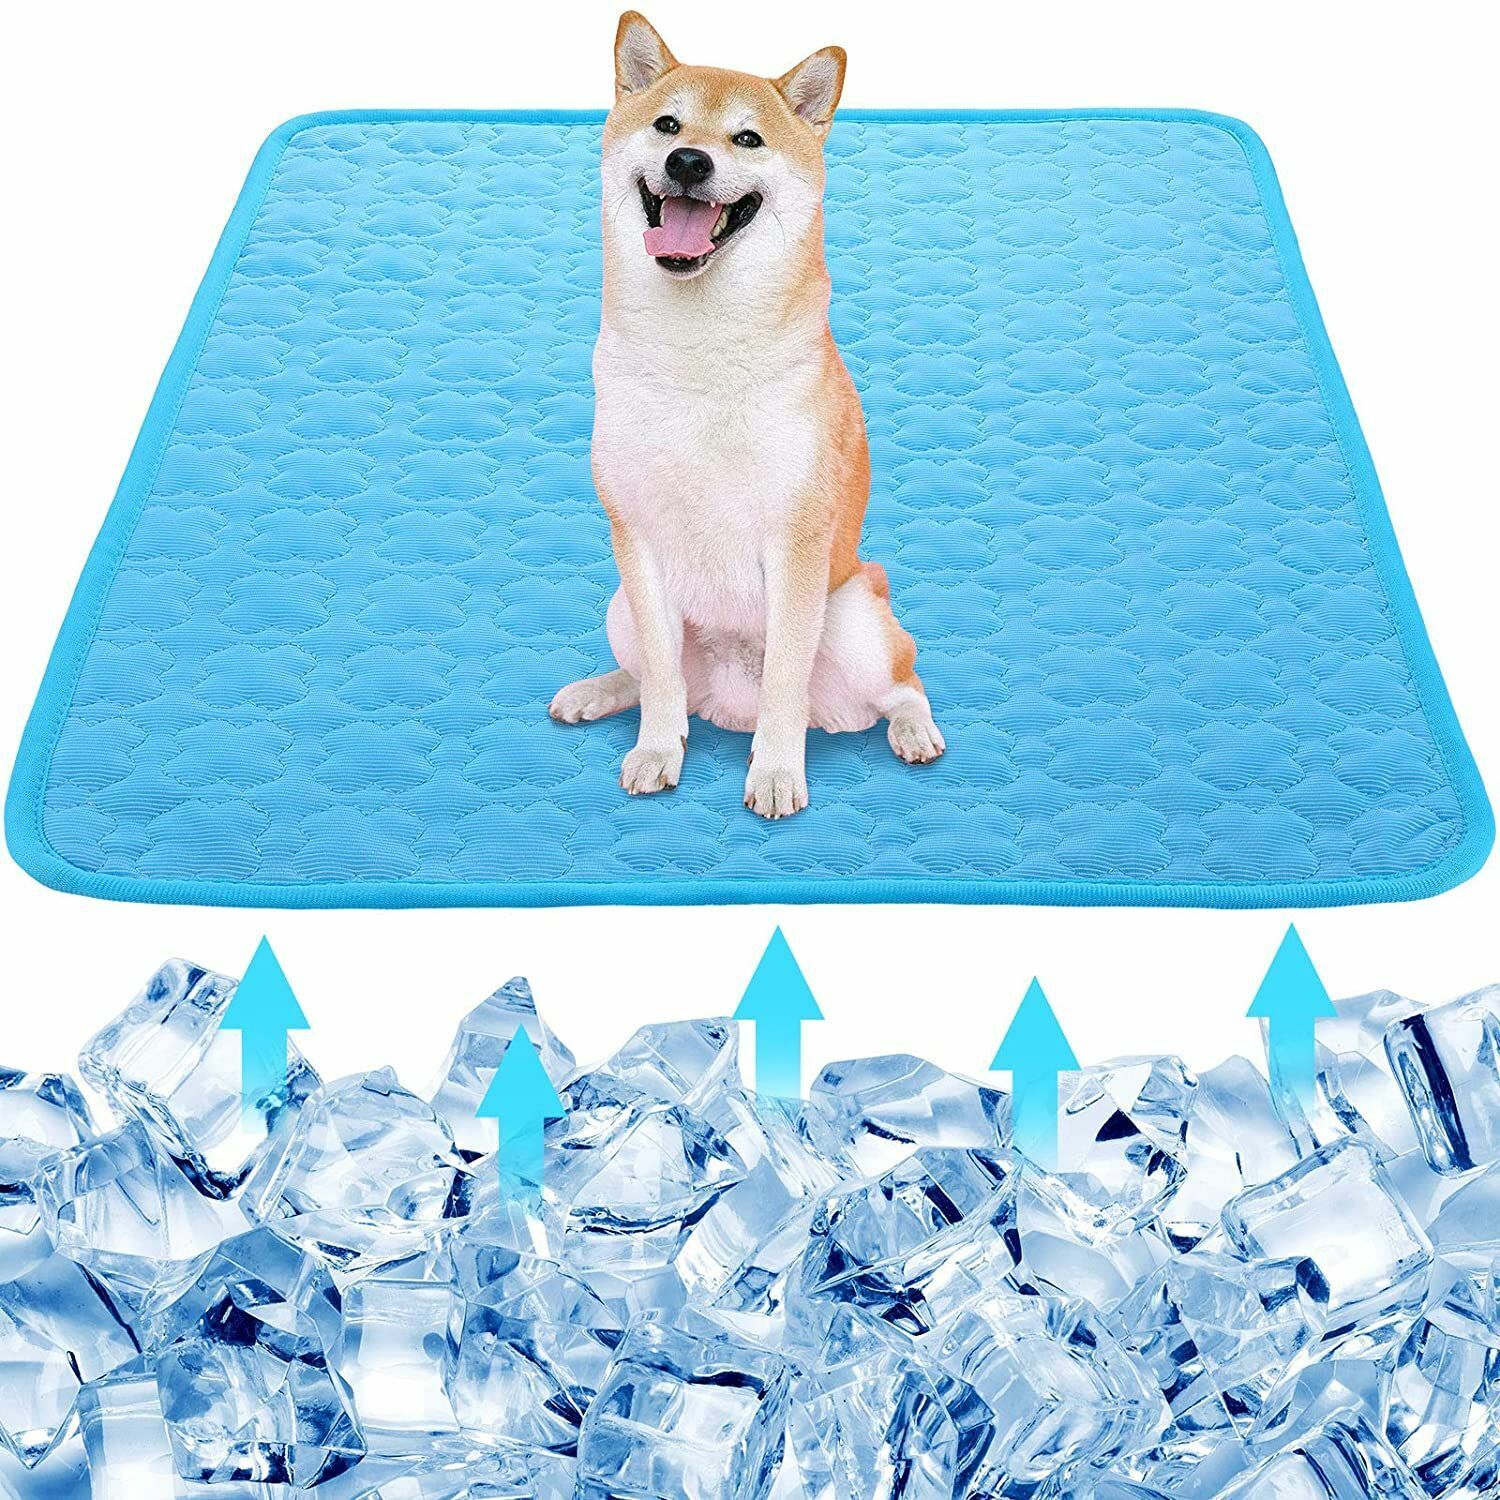 Import Bed Moisture-proof Cool Ice Max 51% OFF Silk Cooling Pet Mat Sleepi Mattress